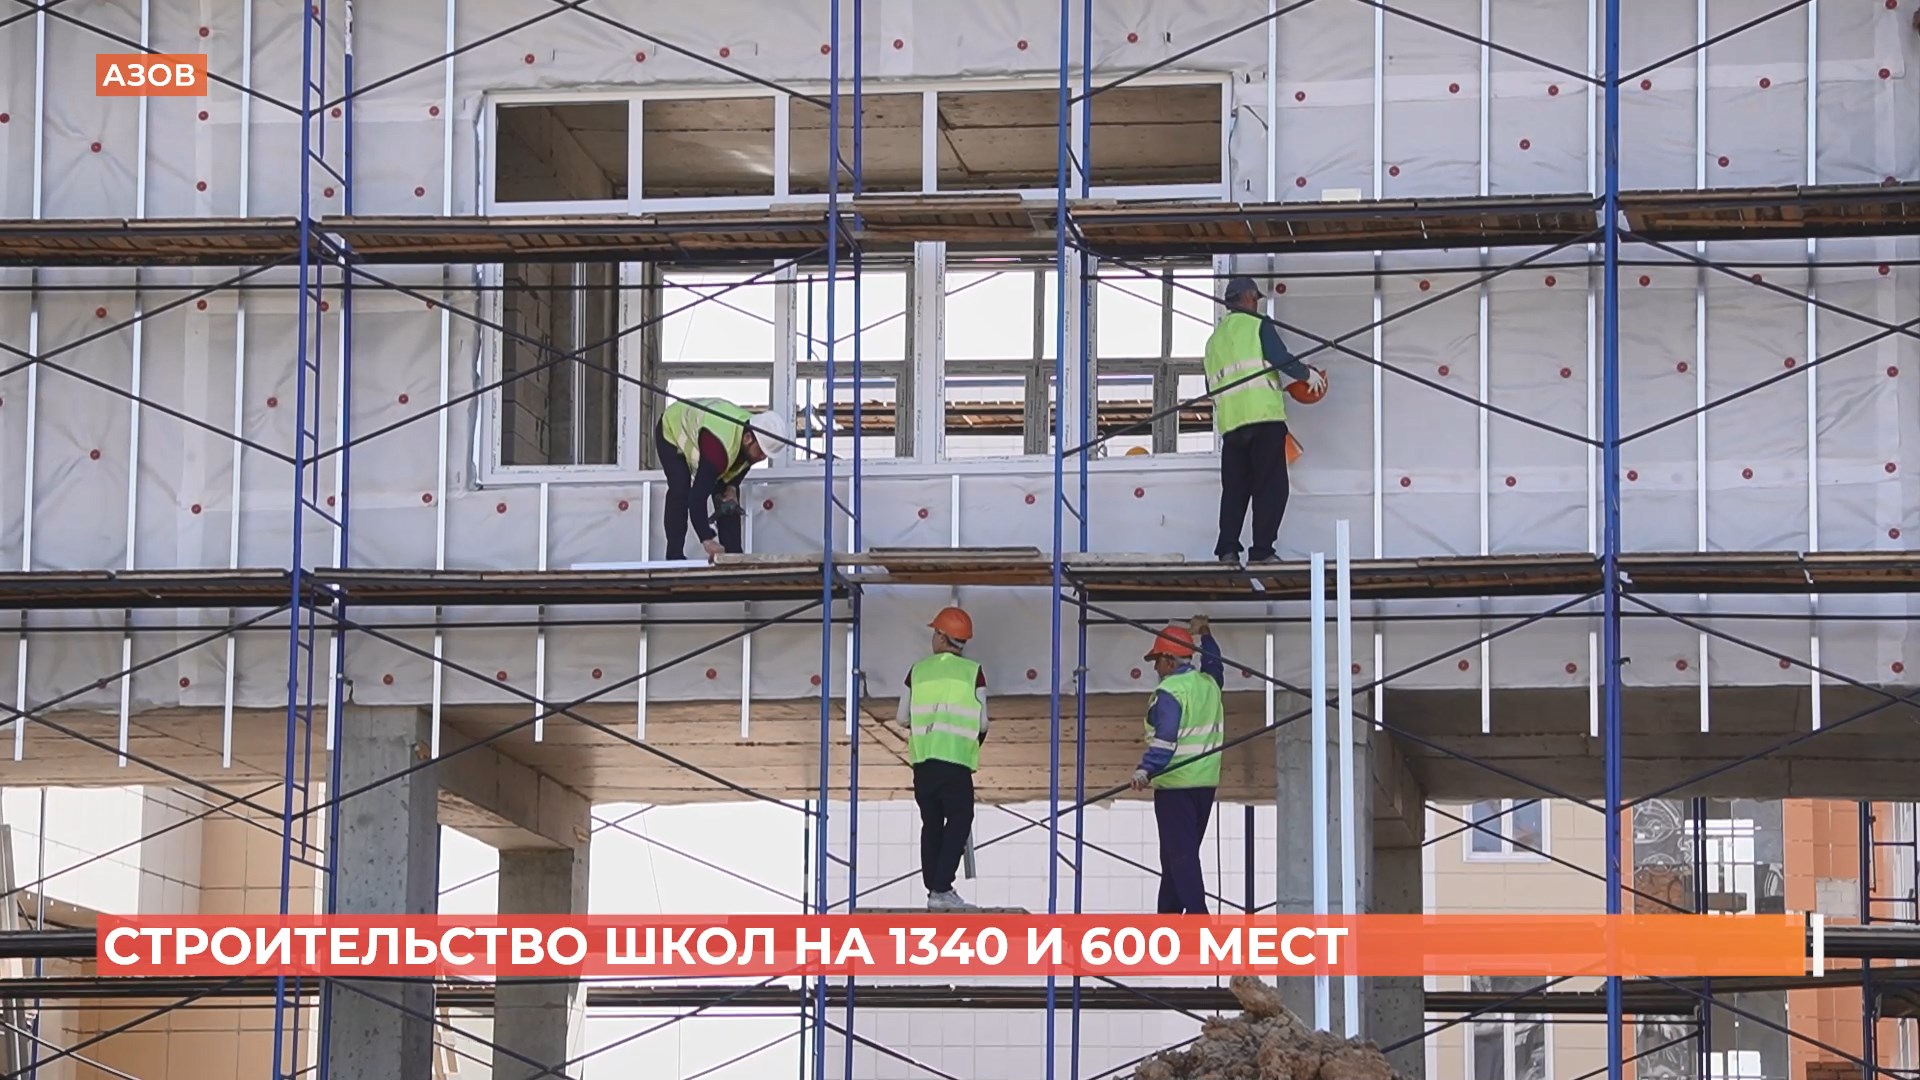 Две новые школы в Азове на 1340 и 600 мест будут сданы в конце лета